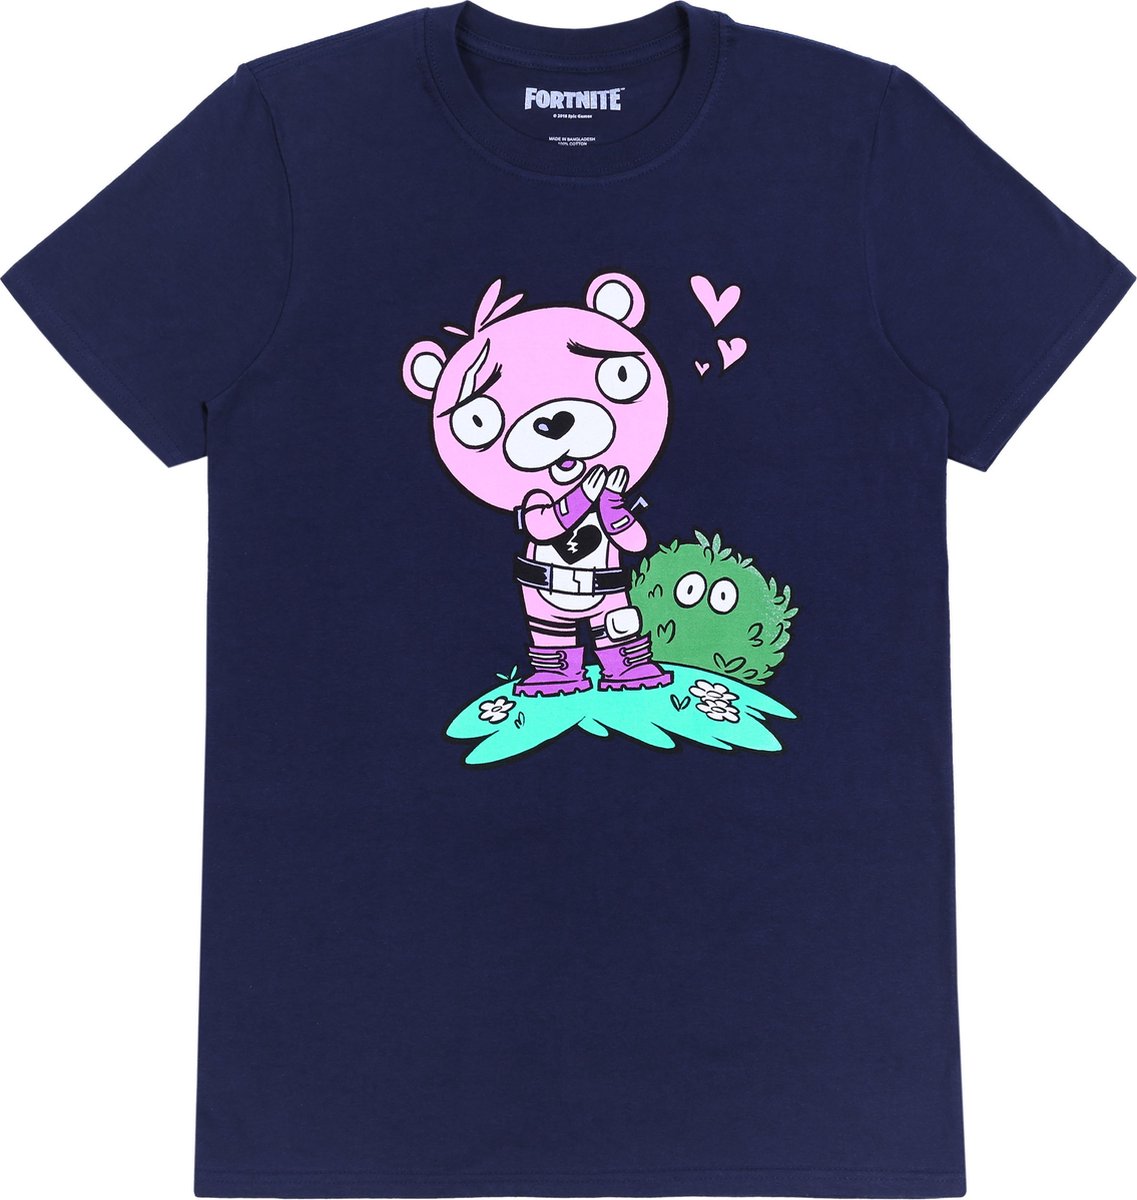 Fortnite - Marineblauw T-shirt met een roze beer / L